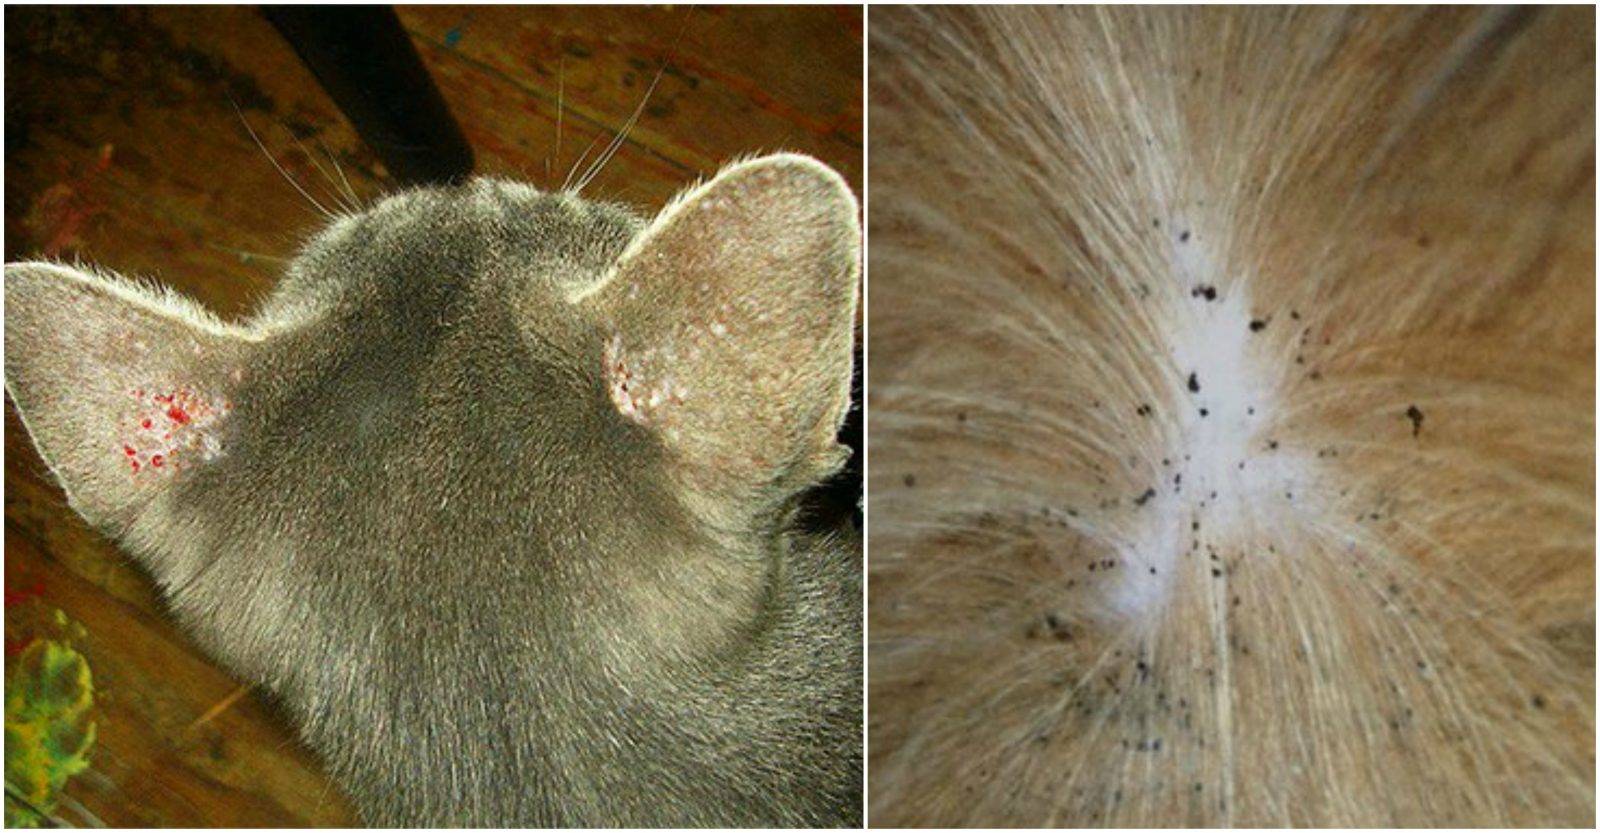 Ушной клещ (отодектоз) у кошек: симптомы и лечение